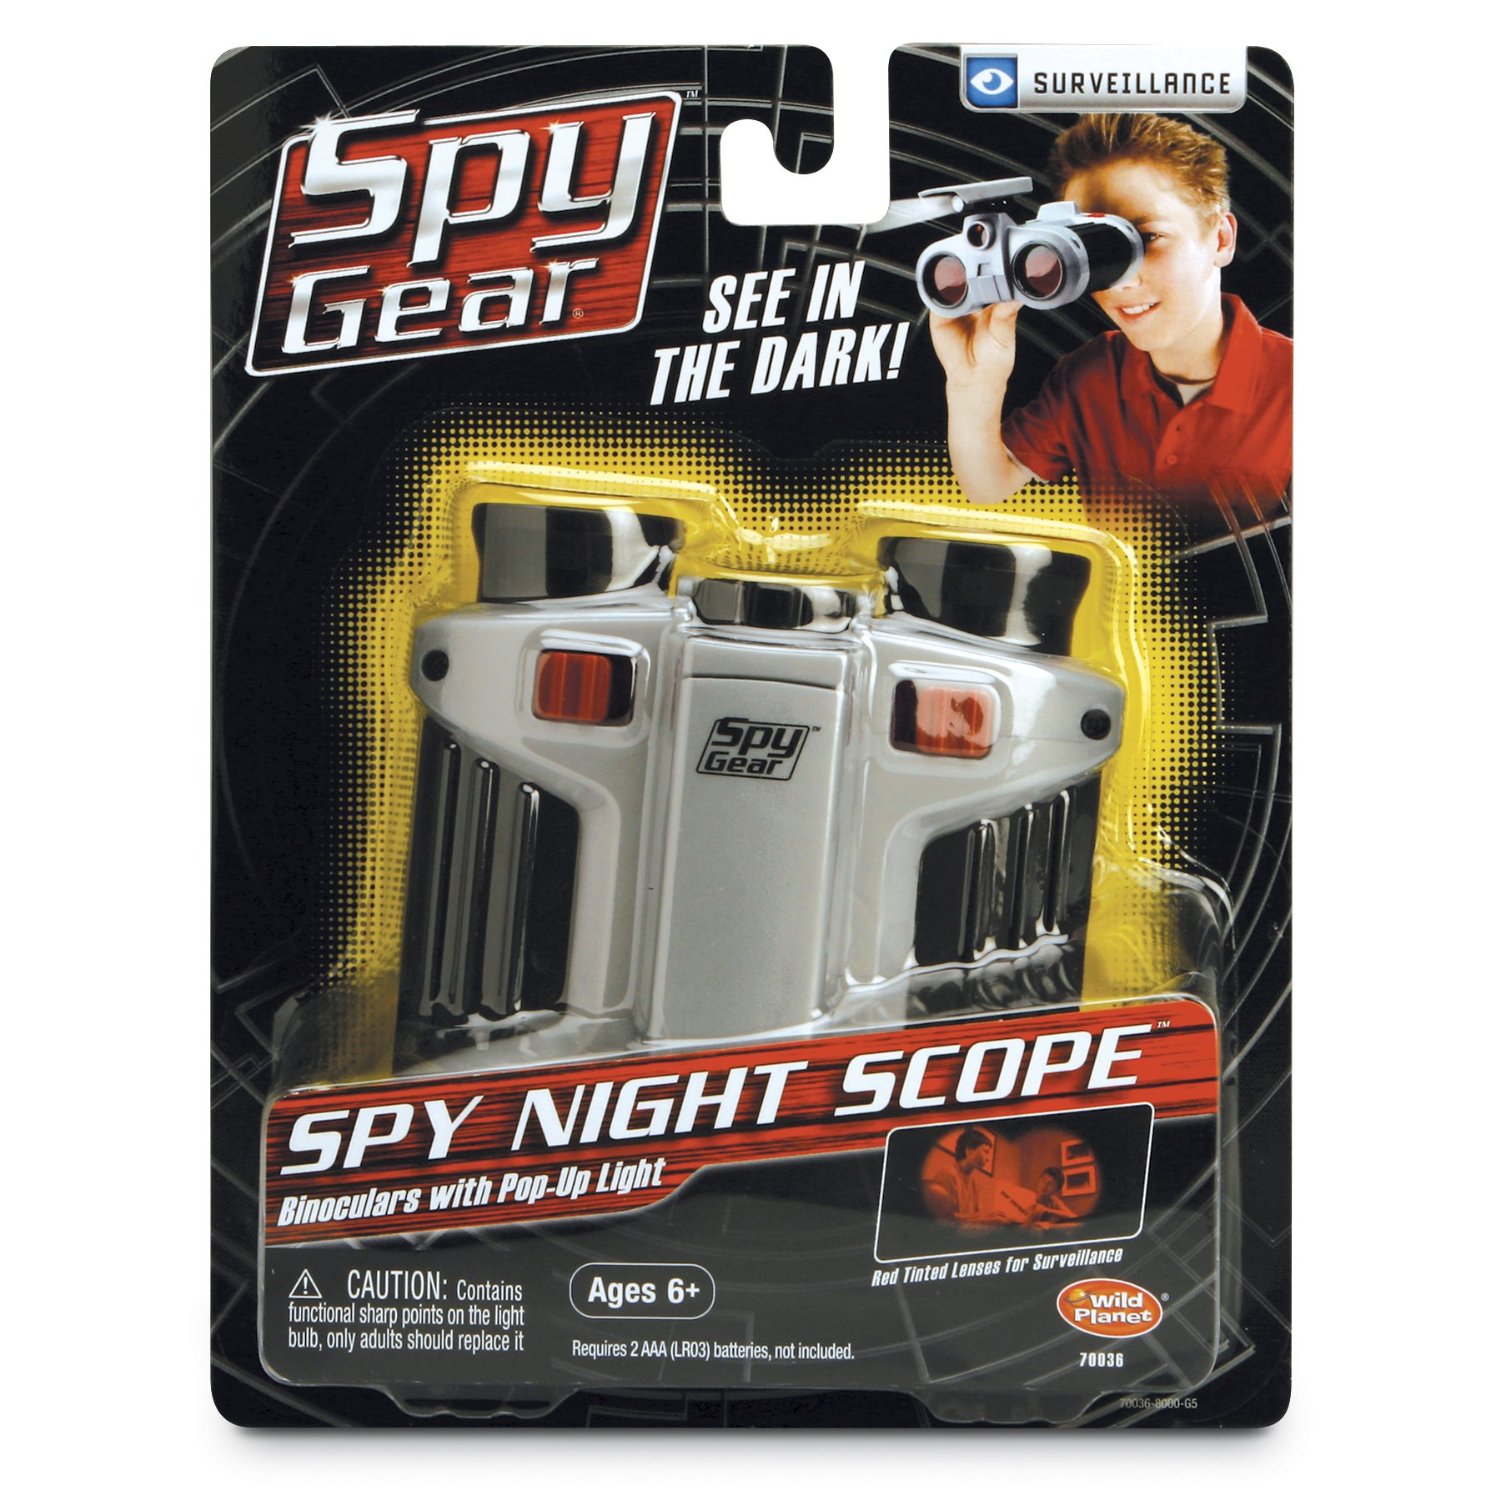 Spy night